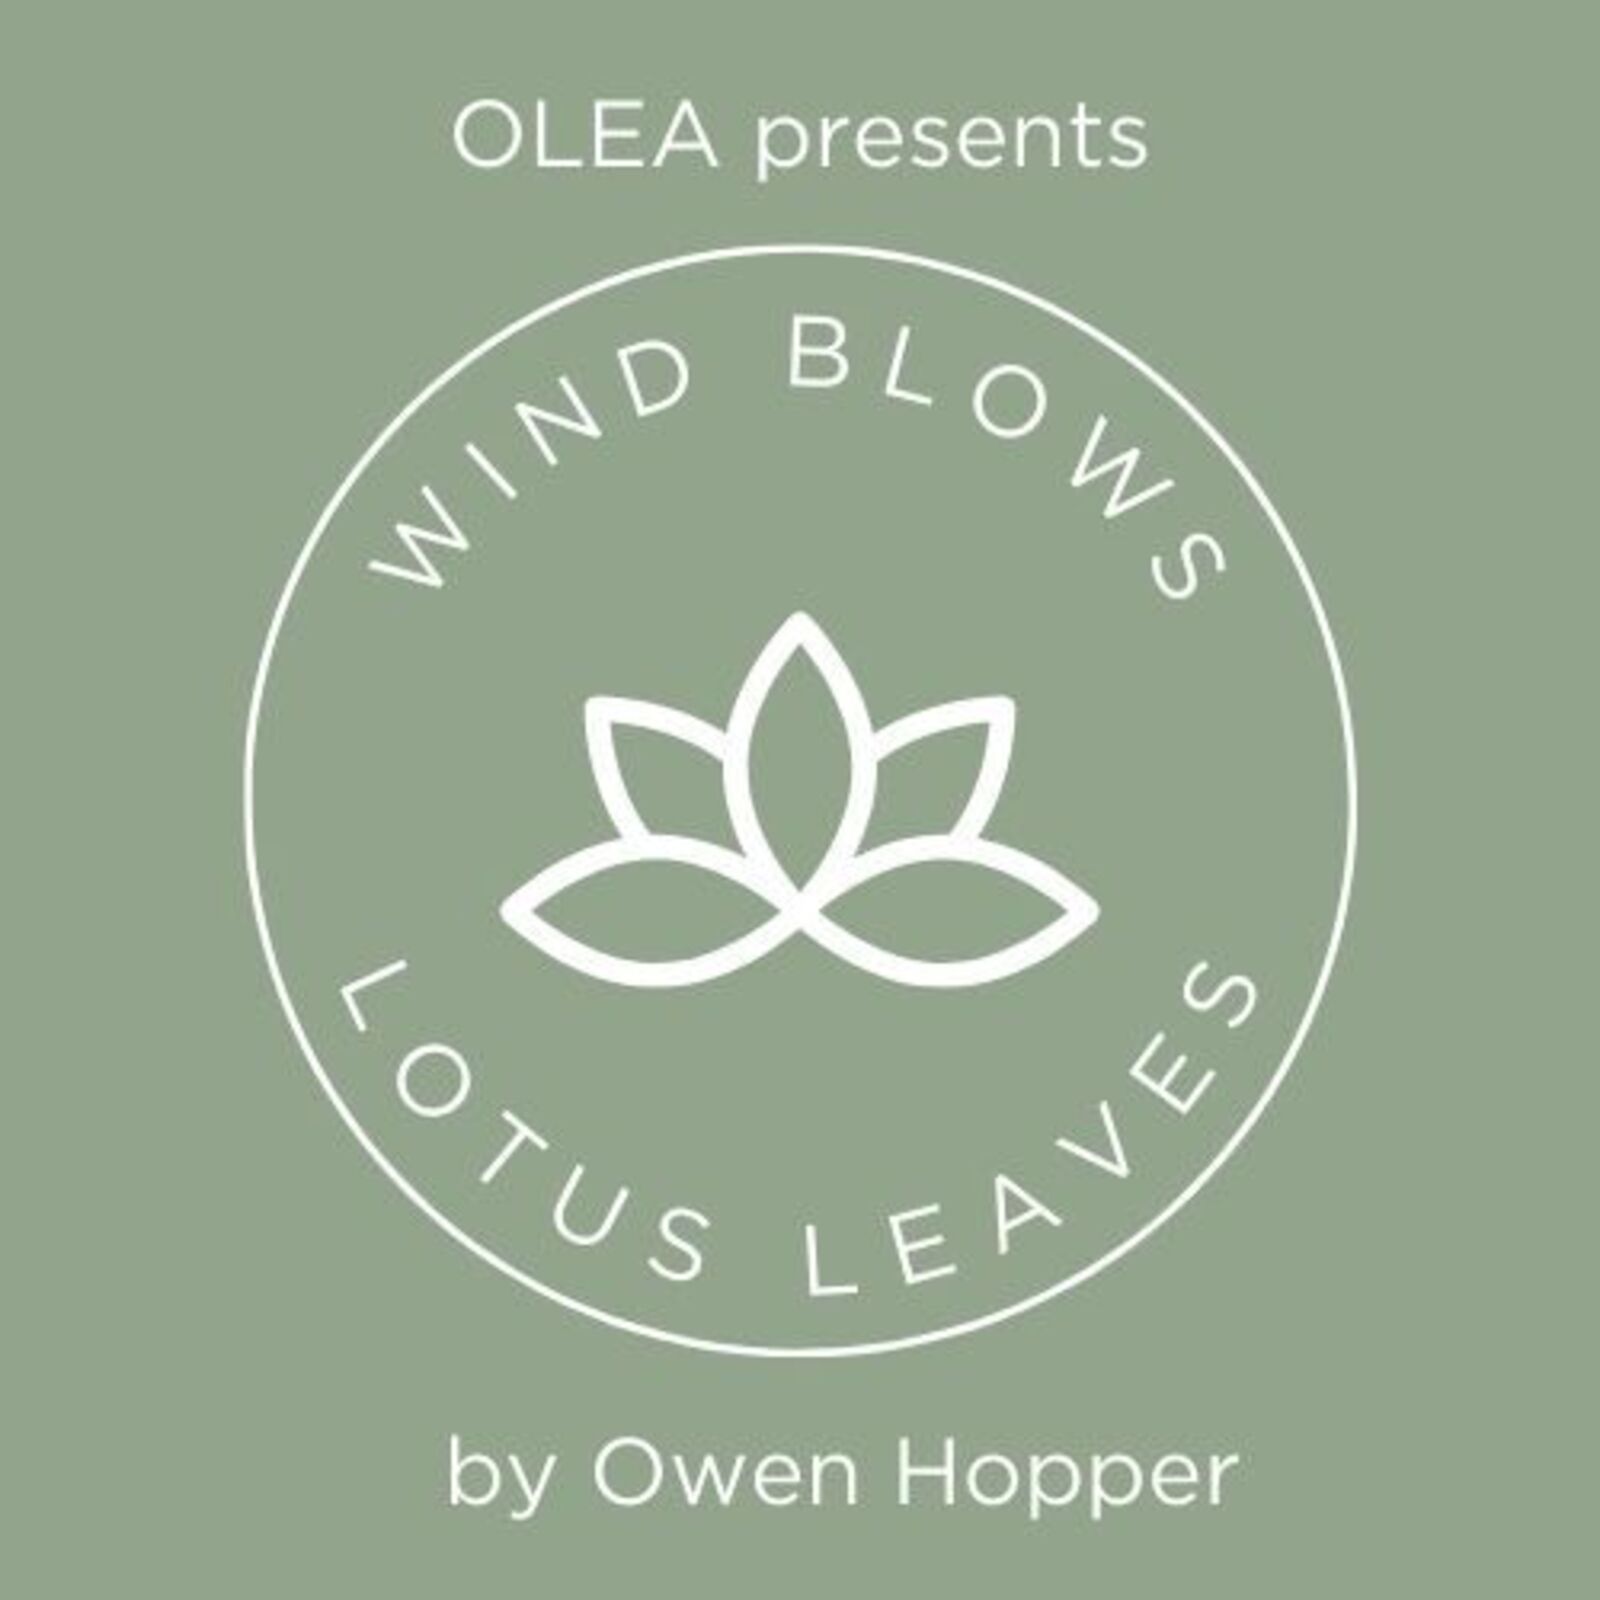 olea-presents-wind-blows-lotus-leaves-premiere